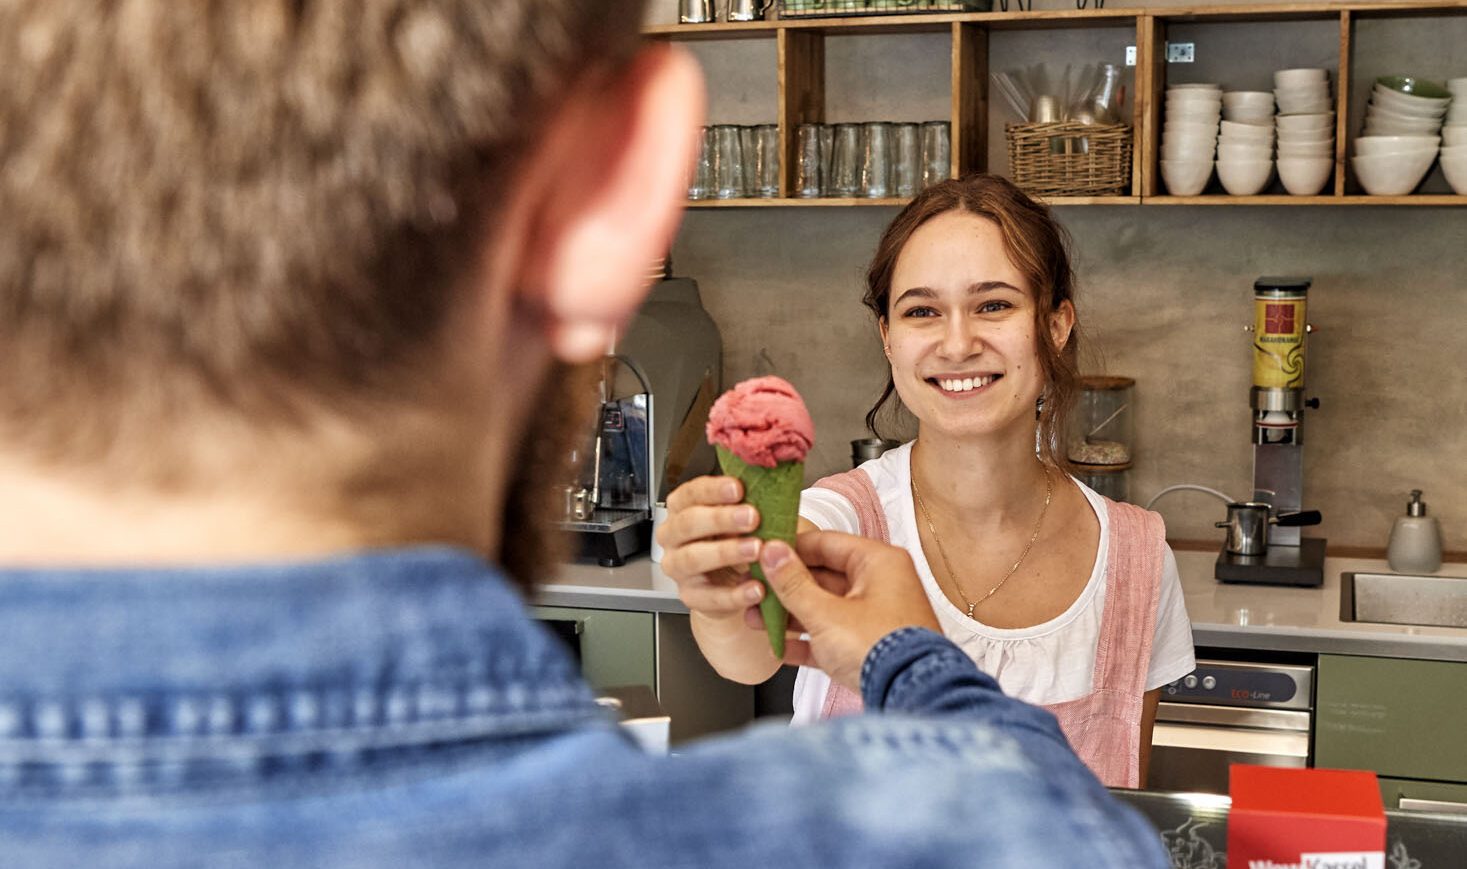 Handgemachte Eiskreationen und ein freundliches Lächeln: das Café Eislust im Herzen der Stadt © Kassel Marketing GmbH/Florian Trykowski